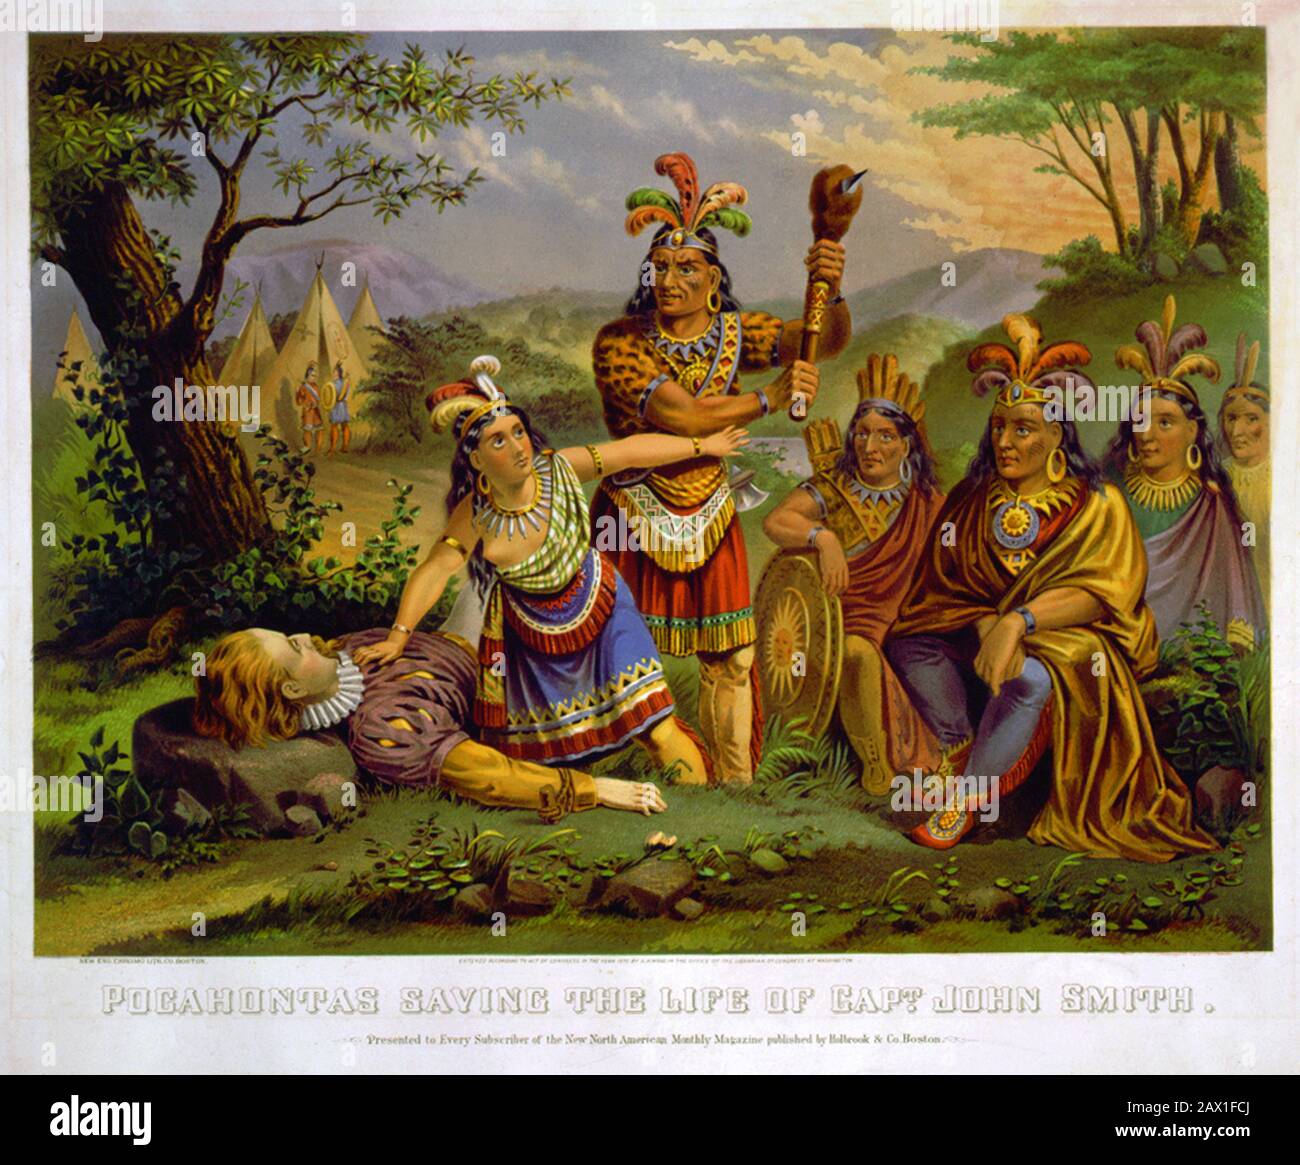 1870 , USA : Pocahontas ( Virginia, 1595 ca – Gravesend, 21 marzo 1617 ) salvare la vita del capitano John Rolfe , New England Chromo. Lith. Co., Stati Uniti. Pocahontas (Matoaka, e più tardi conosciuto come Rebecca Rolfe, c. 1595 – marzo 1617) è stato un indiano della Virginia[1][2], noto per la sua associazione con l'insediamento coloniale di Jamestown, Virginia. Pocahontas era la figlia di Powhatan, il capo principale di una rete di nazioni tribali tributarie nella regione di Tidewater della Virginia. In un noto aneddoto storico, si dice che abbia salvato la vita di un prigioniero indiano, inglese John Smith, in Foto Stock